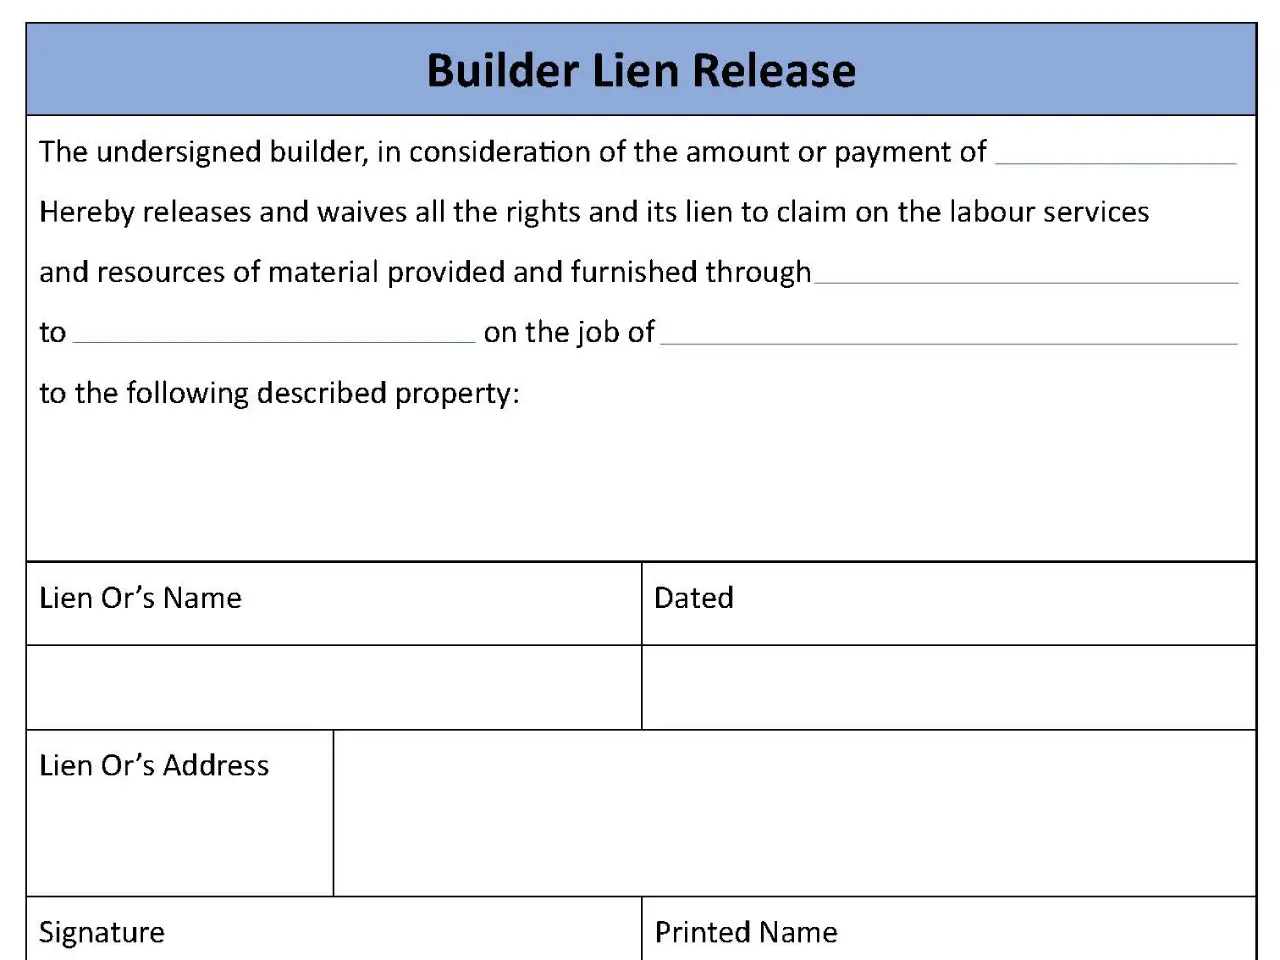 Builder Lien Release Form